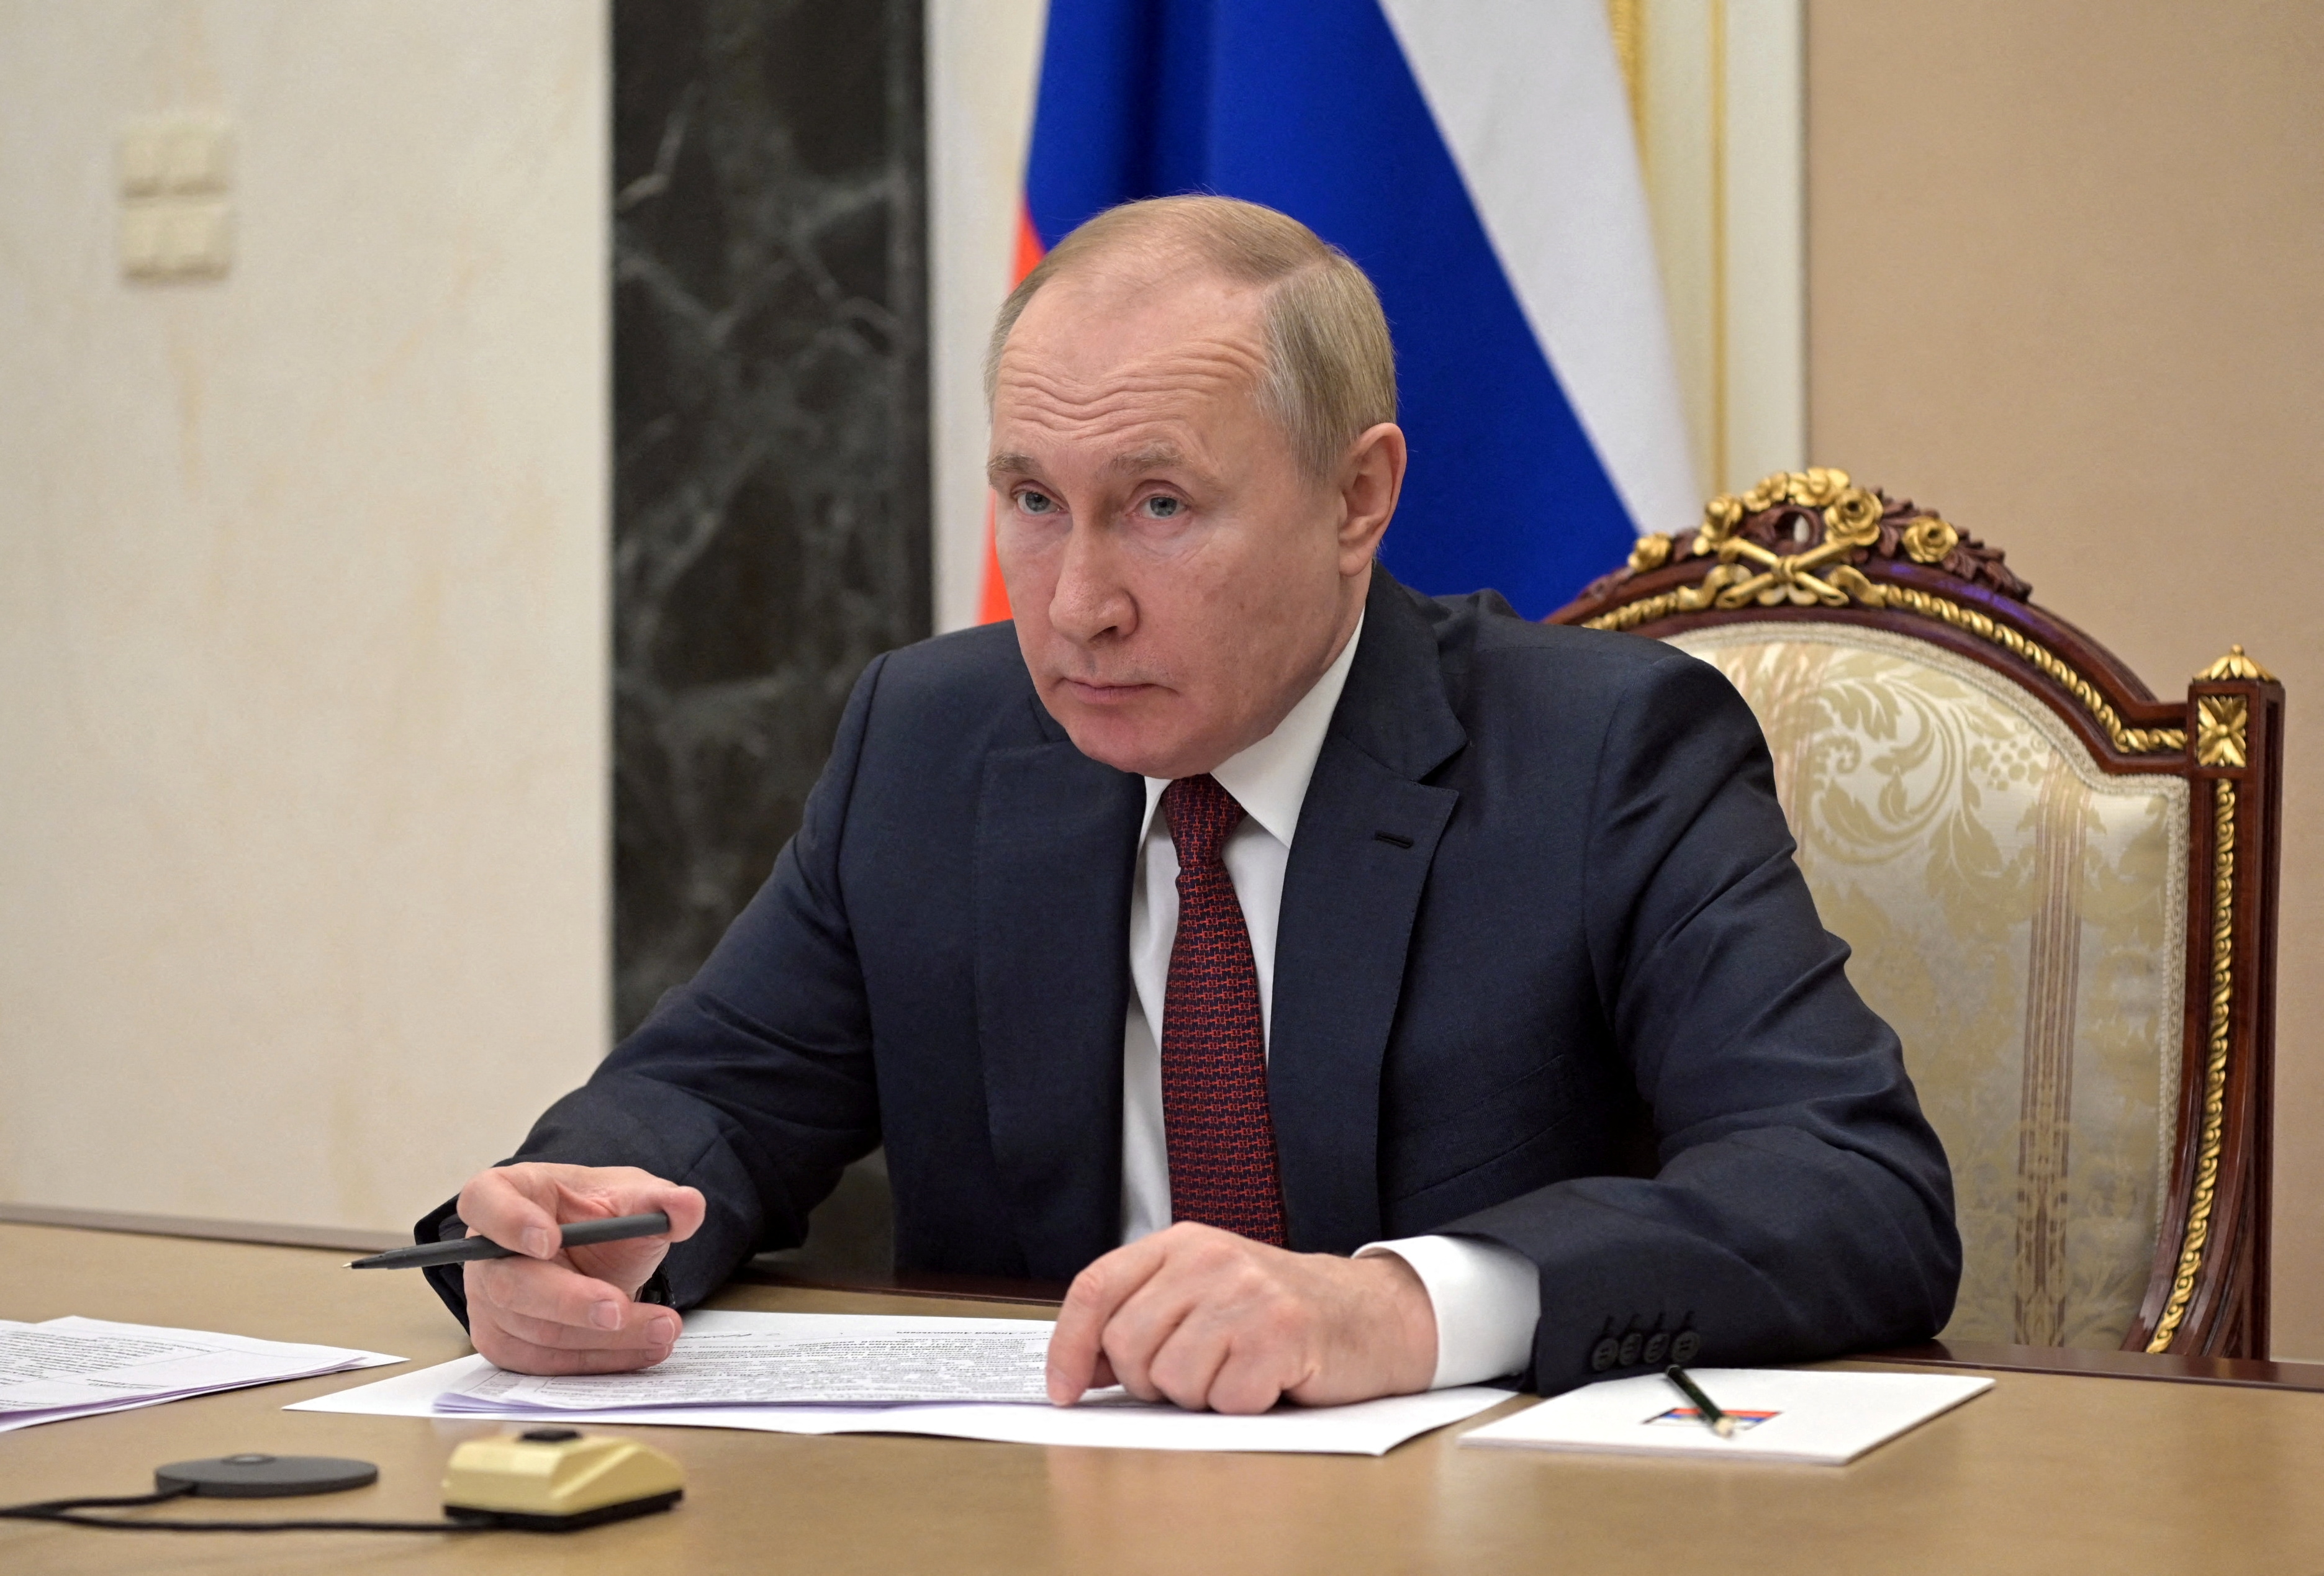 Rusijos prezidentas Vladimiras Putinas dalyvauja susitikime su vyriausybės nariais per vaizdo nuorodą Maskvoje, Rusija 12 m. sausio 2022 d. Sputnik / Aleksejus Nikolskis / Kremlius per REUTERS